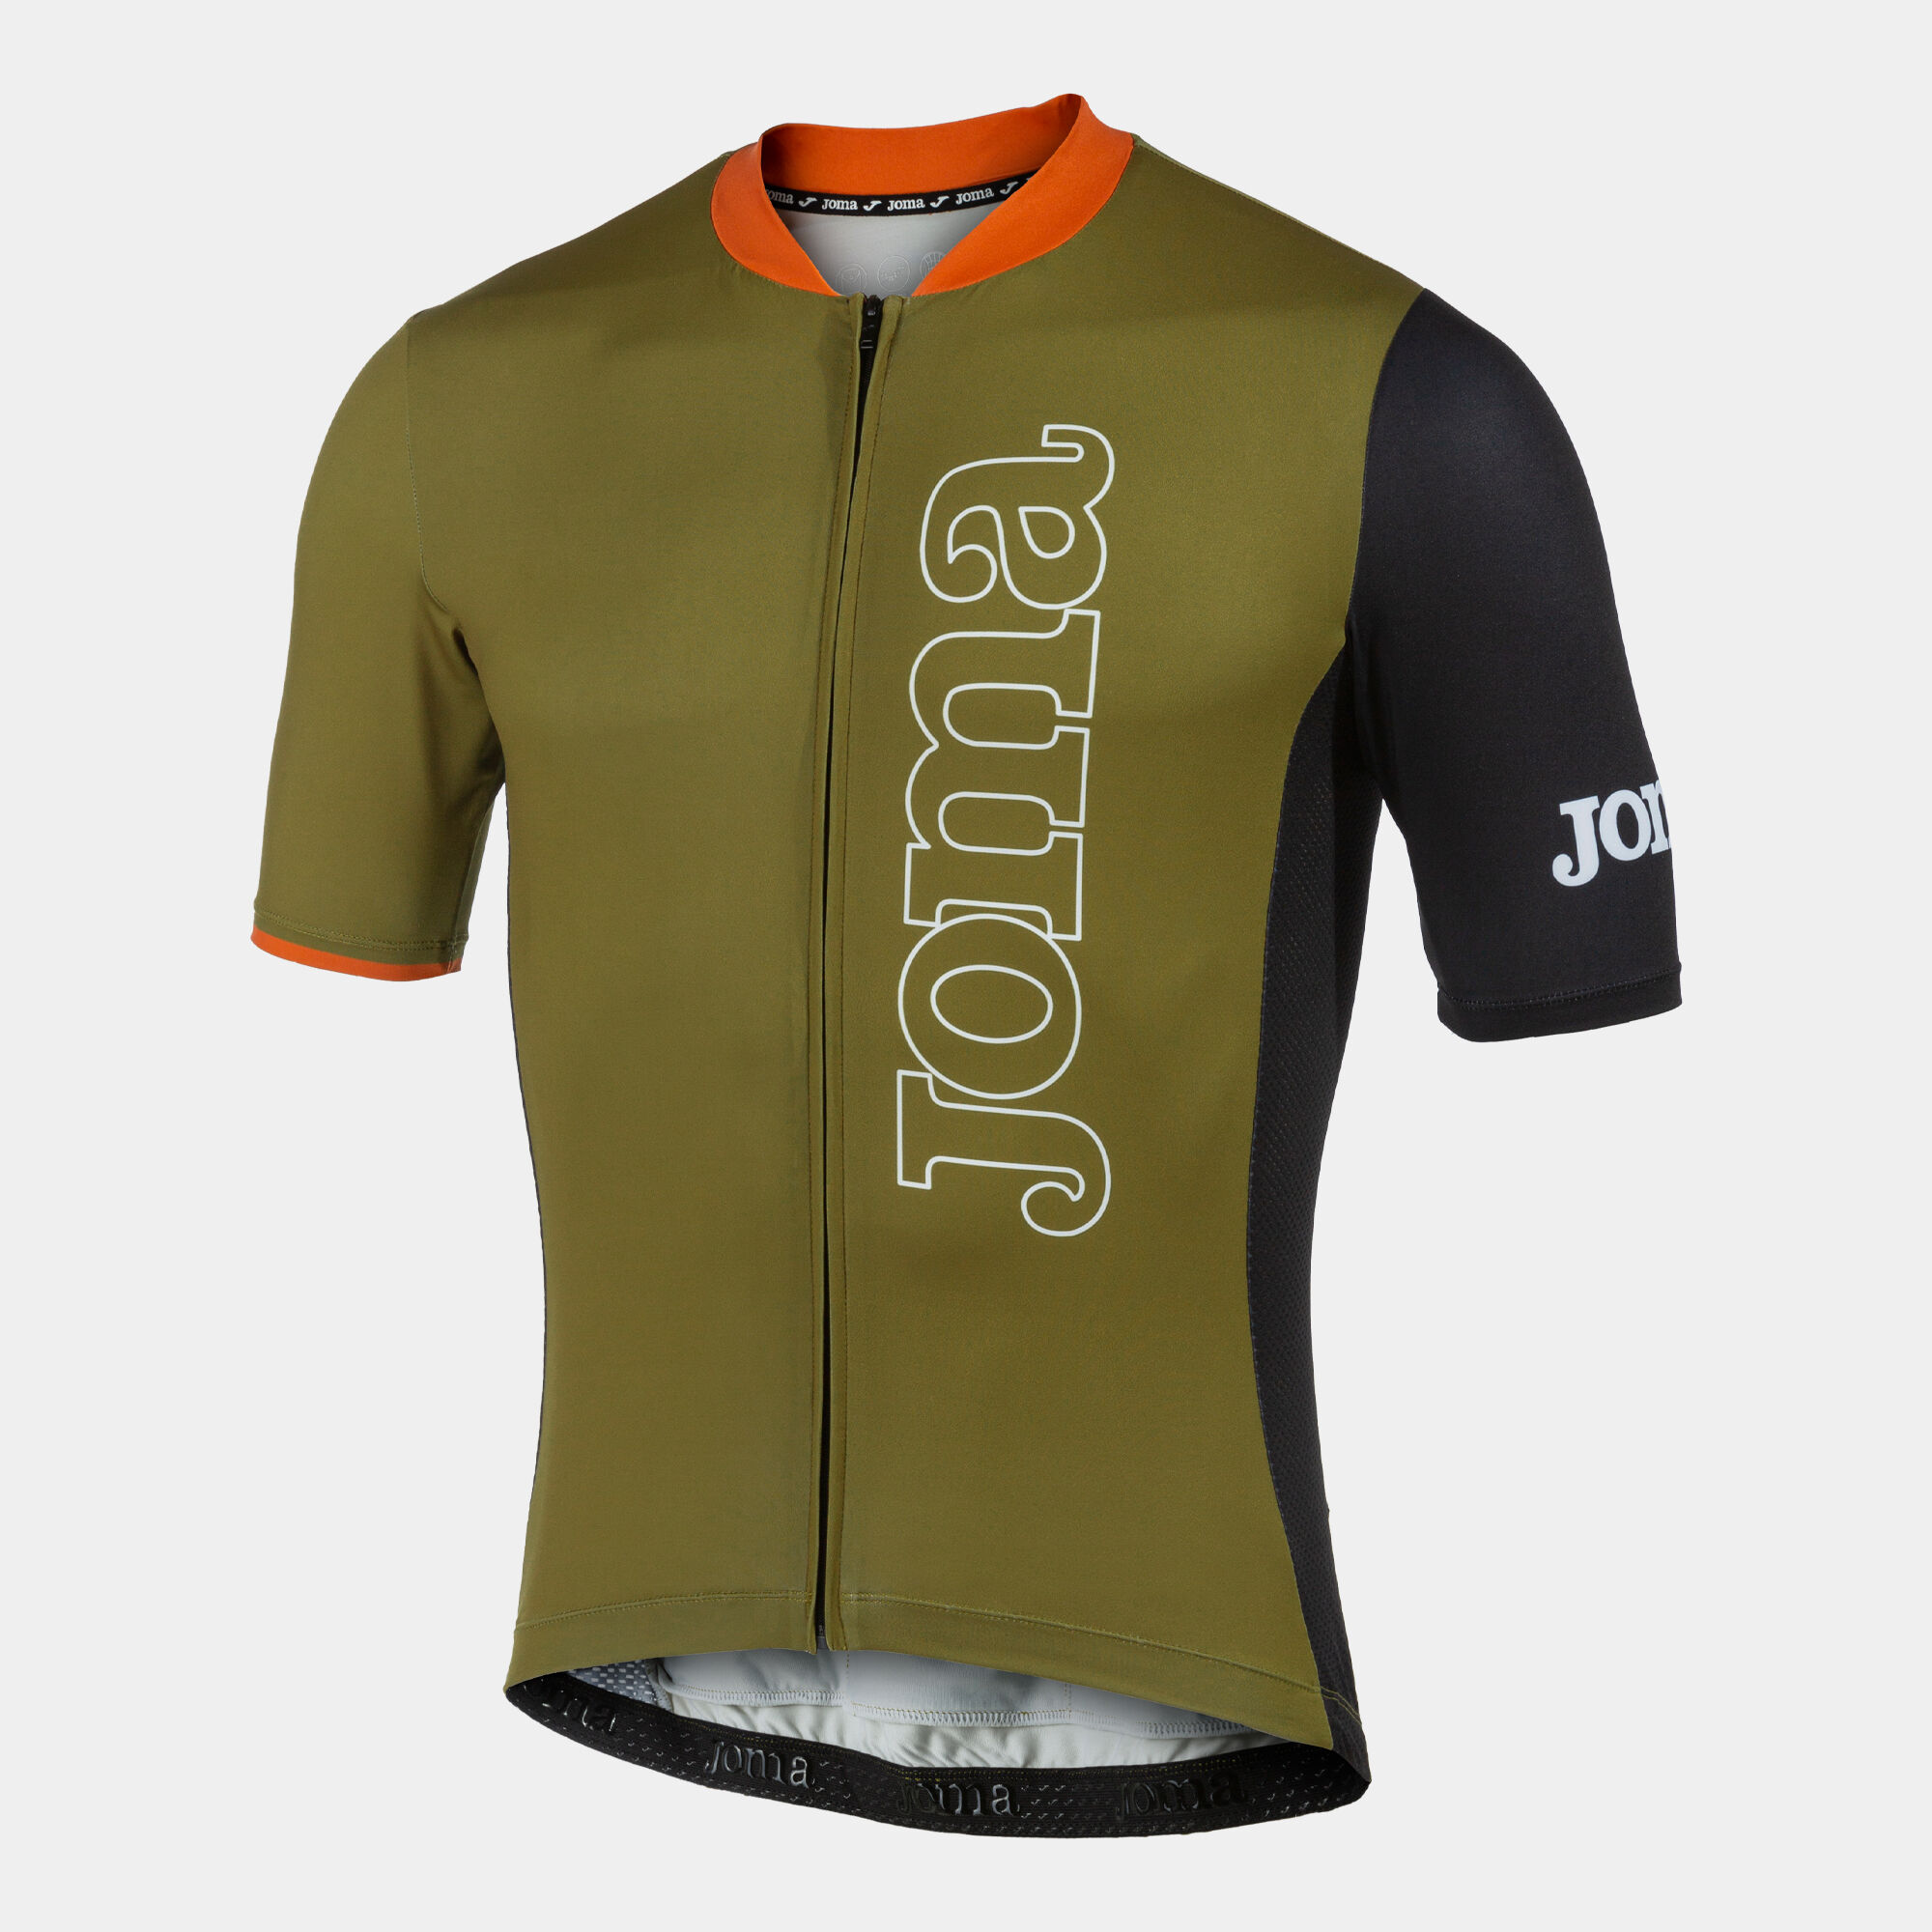 Cycling jersey unisex Crono khaki black